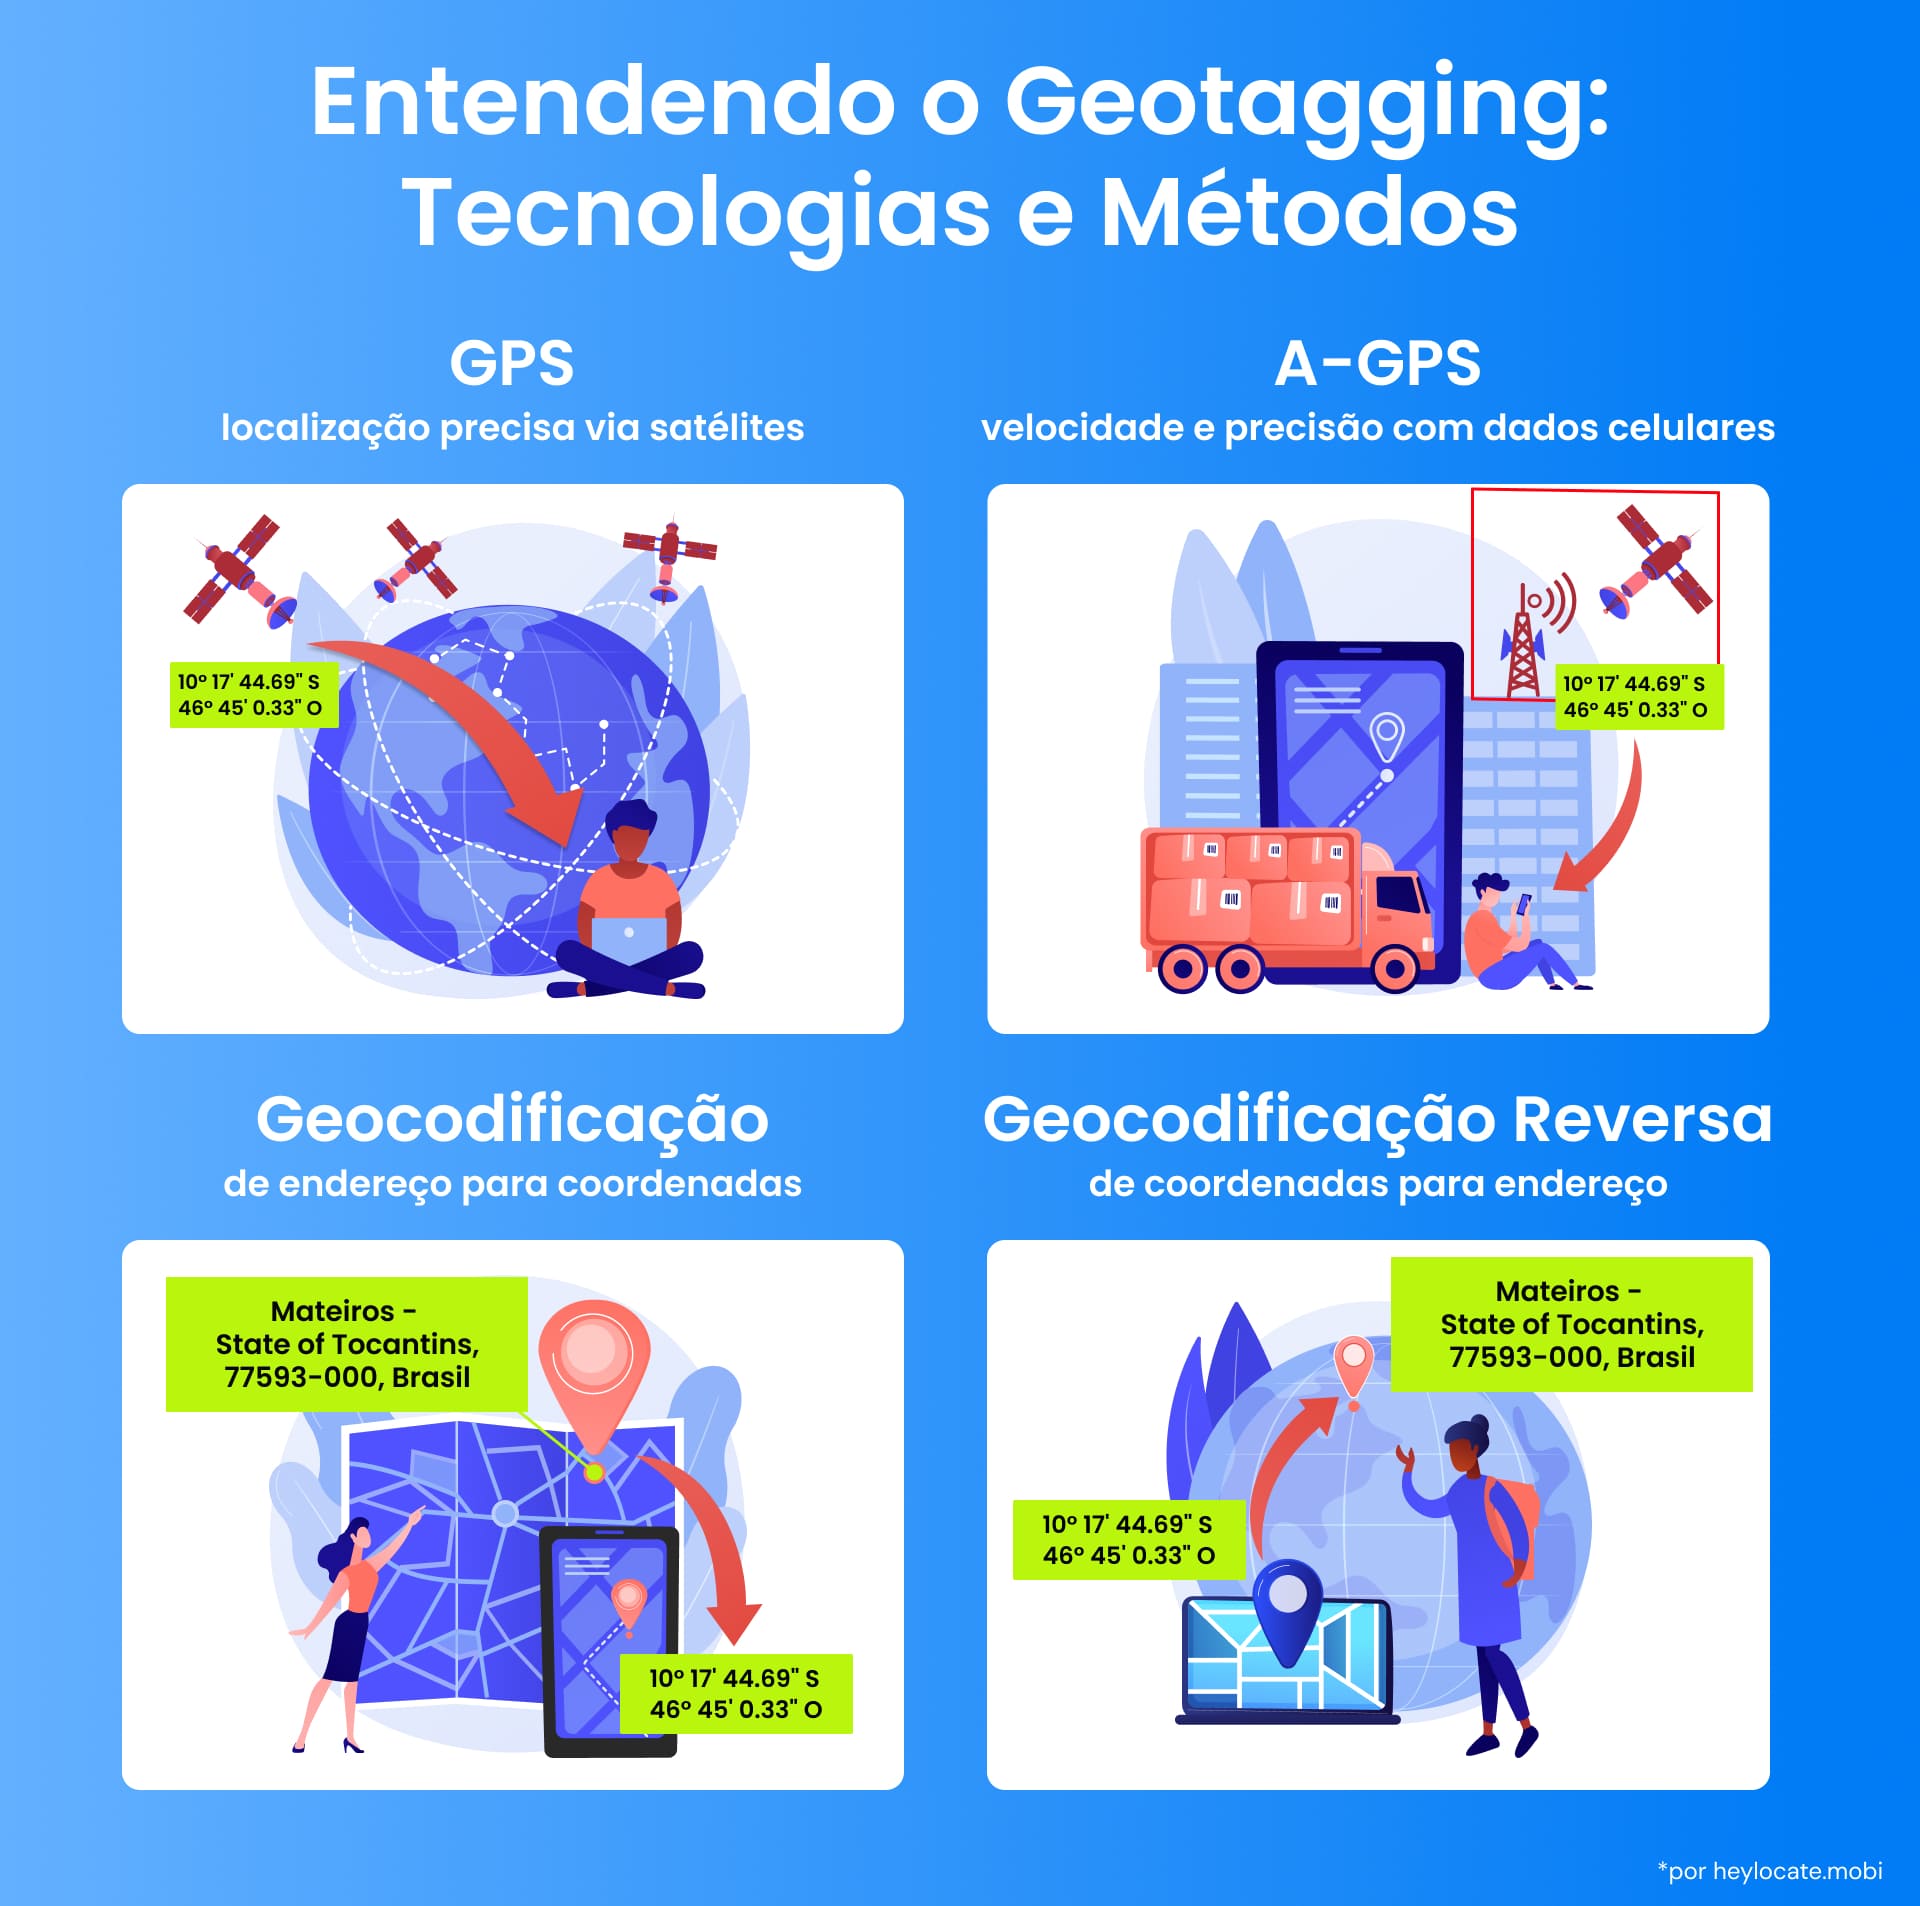 Infográfico mostrando as tecnologias GPS e A-GPS, geocodificação e processos de geocodificação reversa com exemplos visuais.